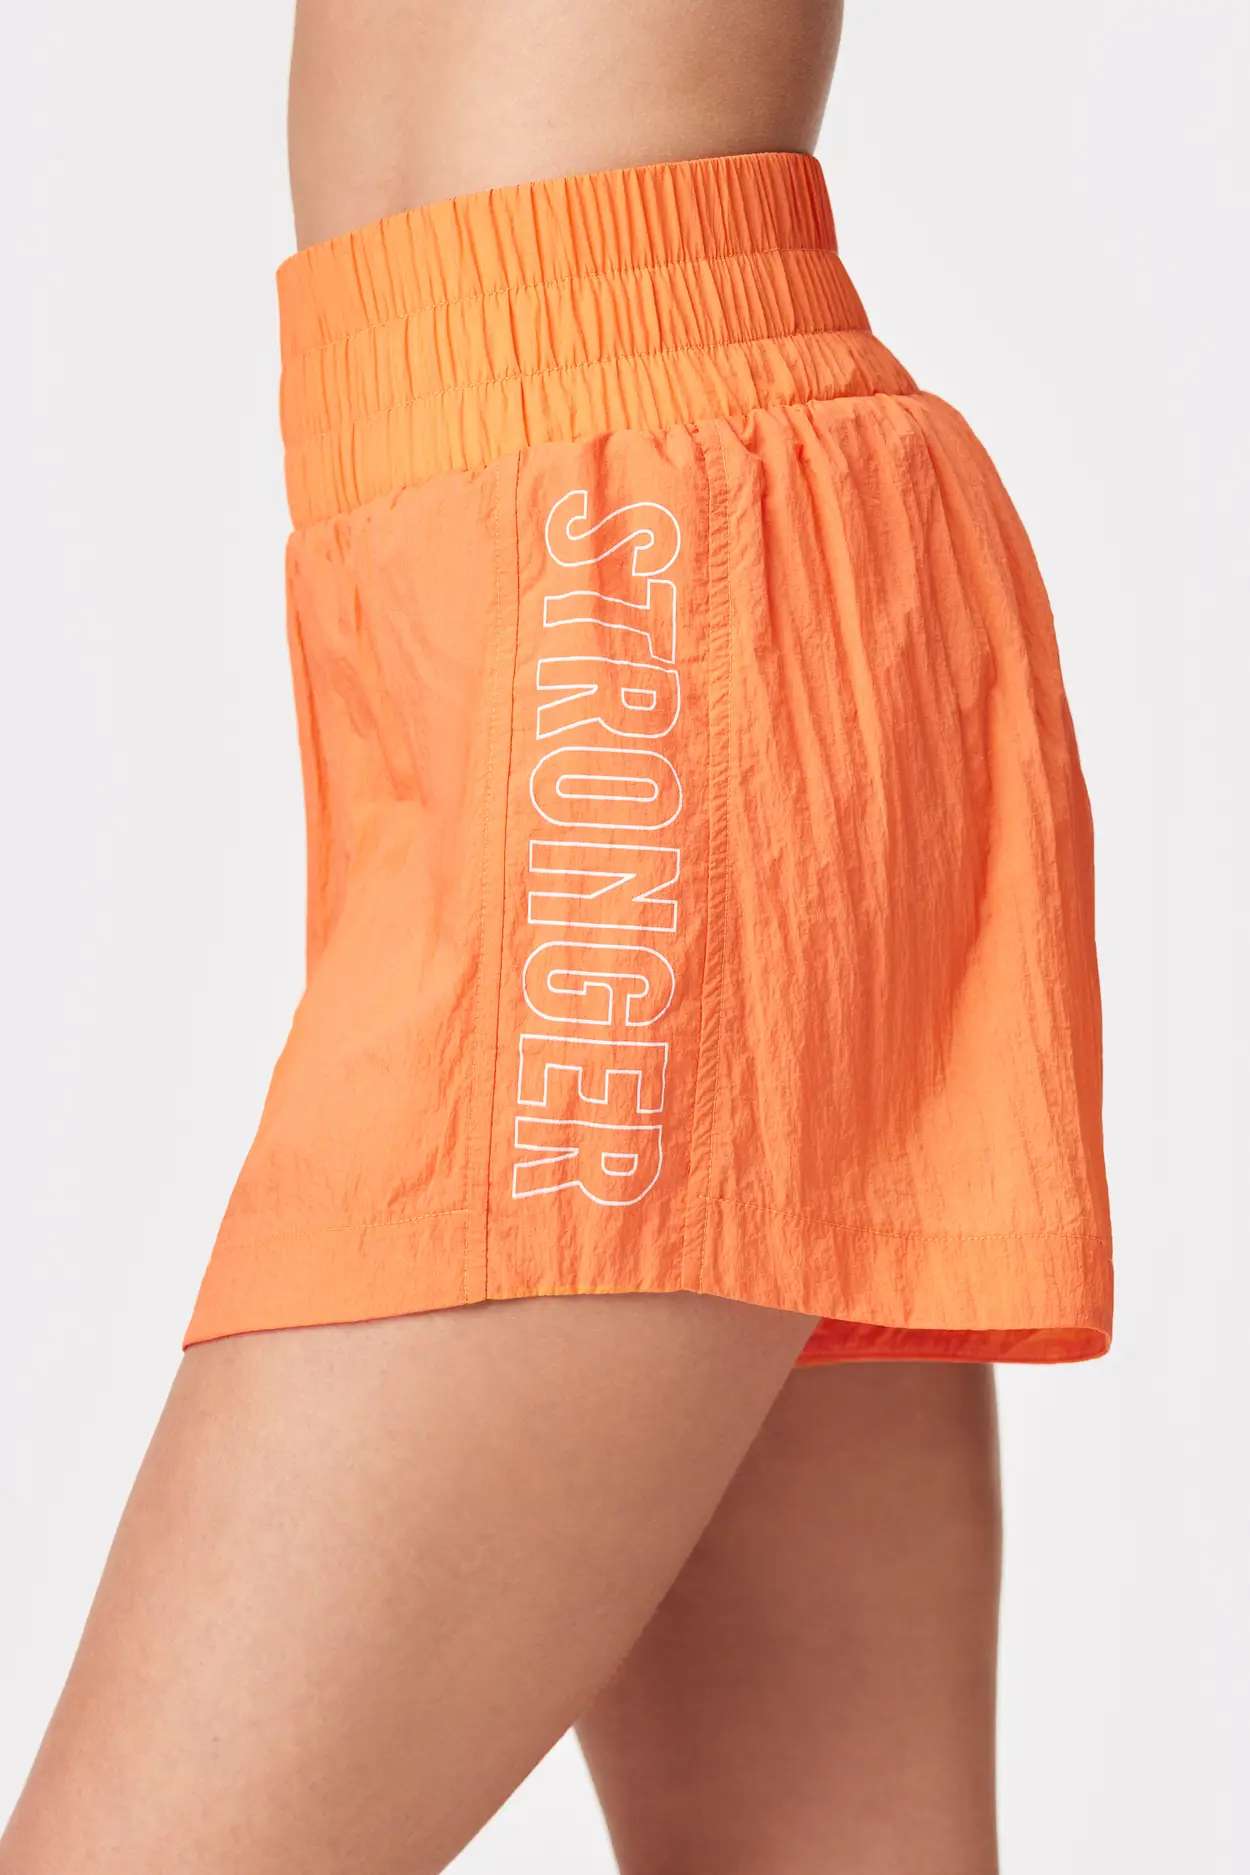 Oranje Shorts I Outdoor I Online kaufen I STRONGER